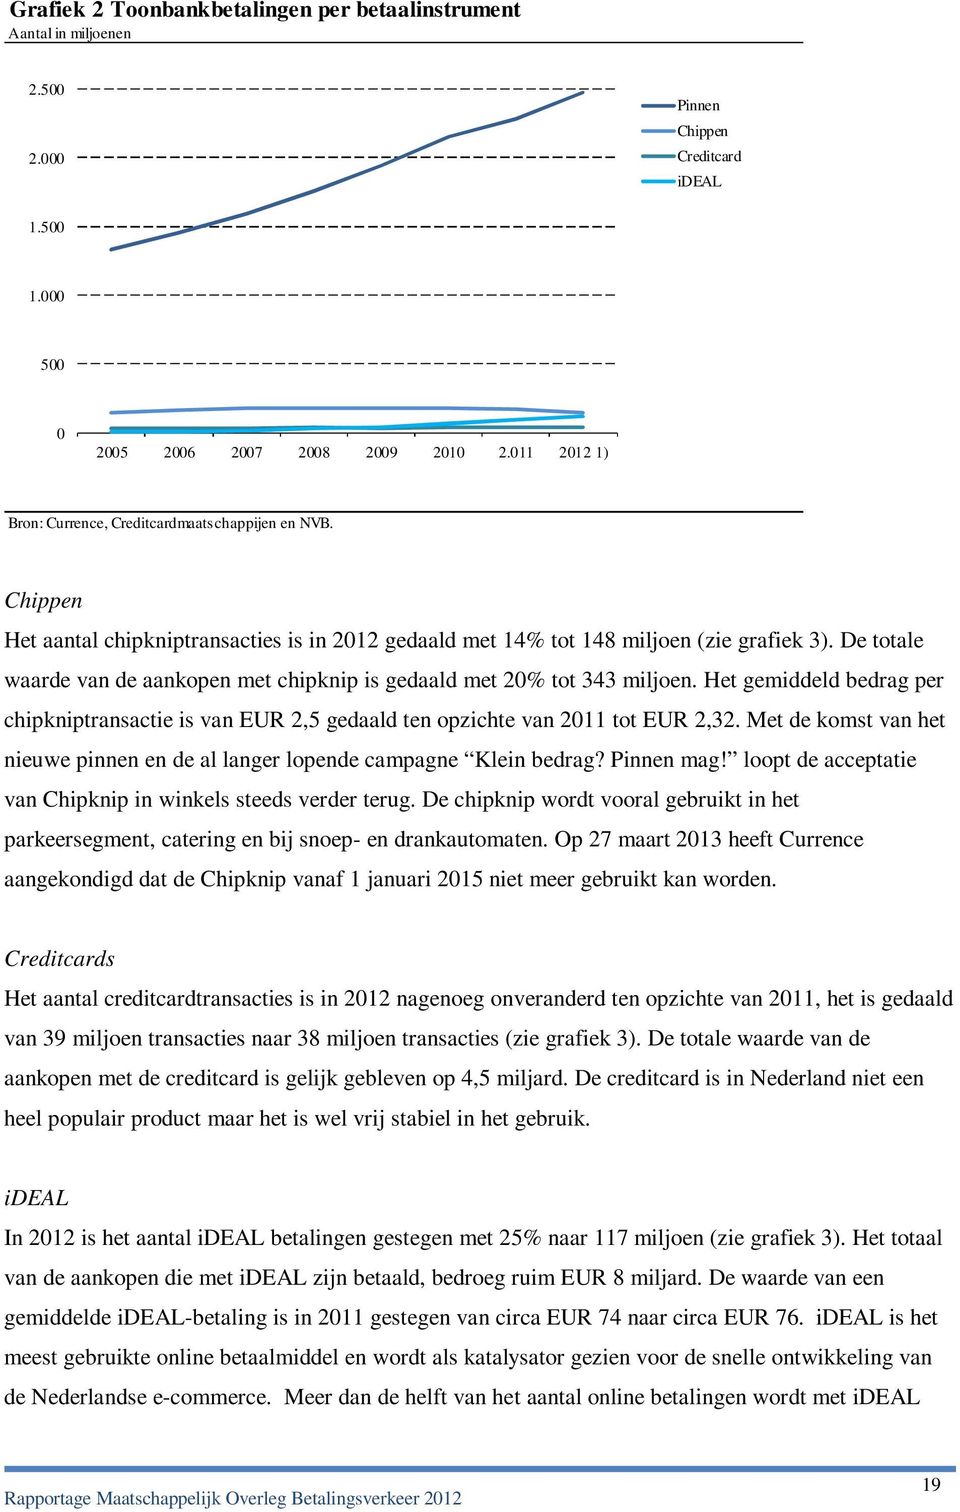 De totale waarde van de aankopen met chipknip is gedaald met 20% tot 343 miljoen. Het gemiddeld bedrag per chipkniptransactie is van EUR 2,5 gedaald ten opzichte van 2011 tot EUR 2,32.